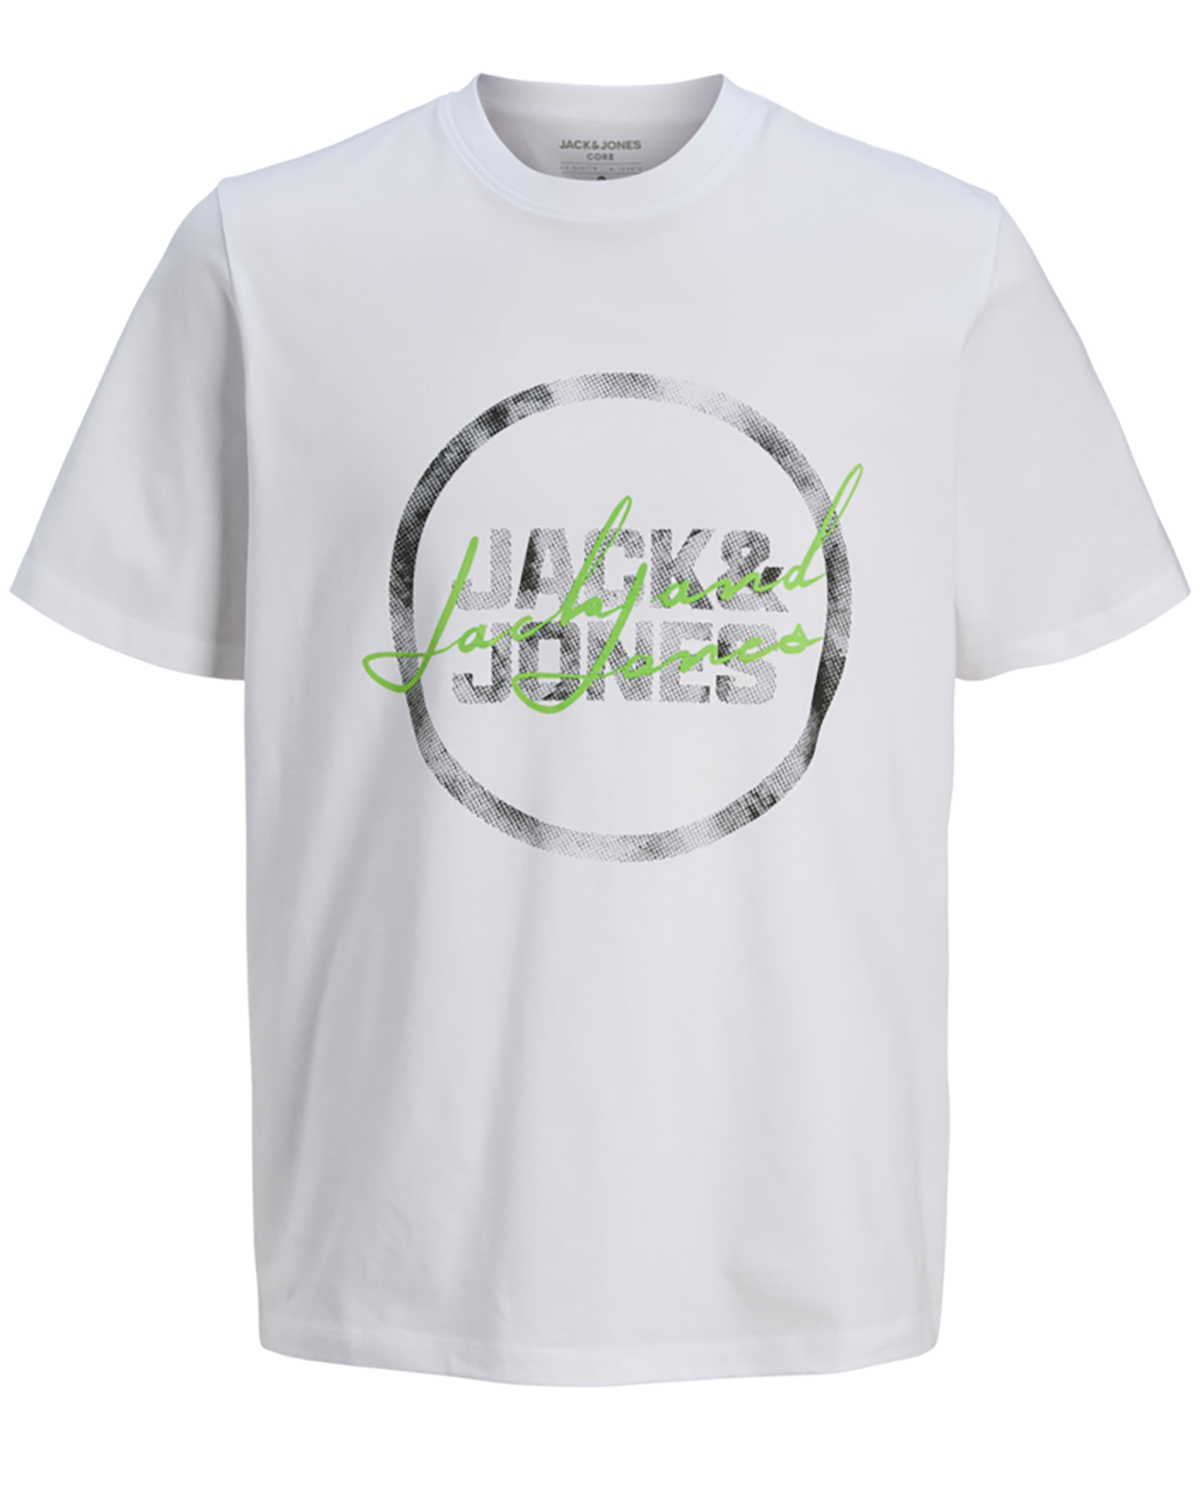 Se Jack & Jones t-shirt s/s, Script tee, hvid - 176 - S+ - S hos Umame.dk